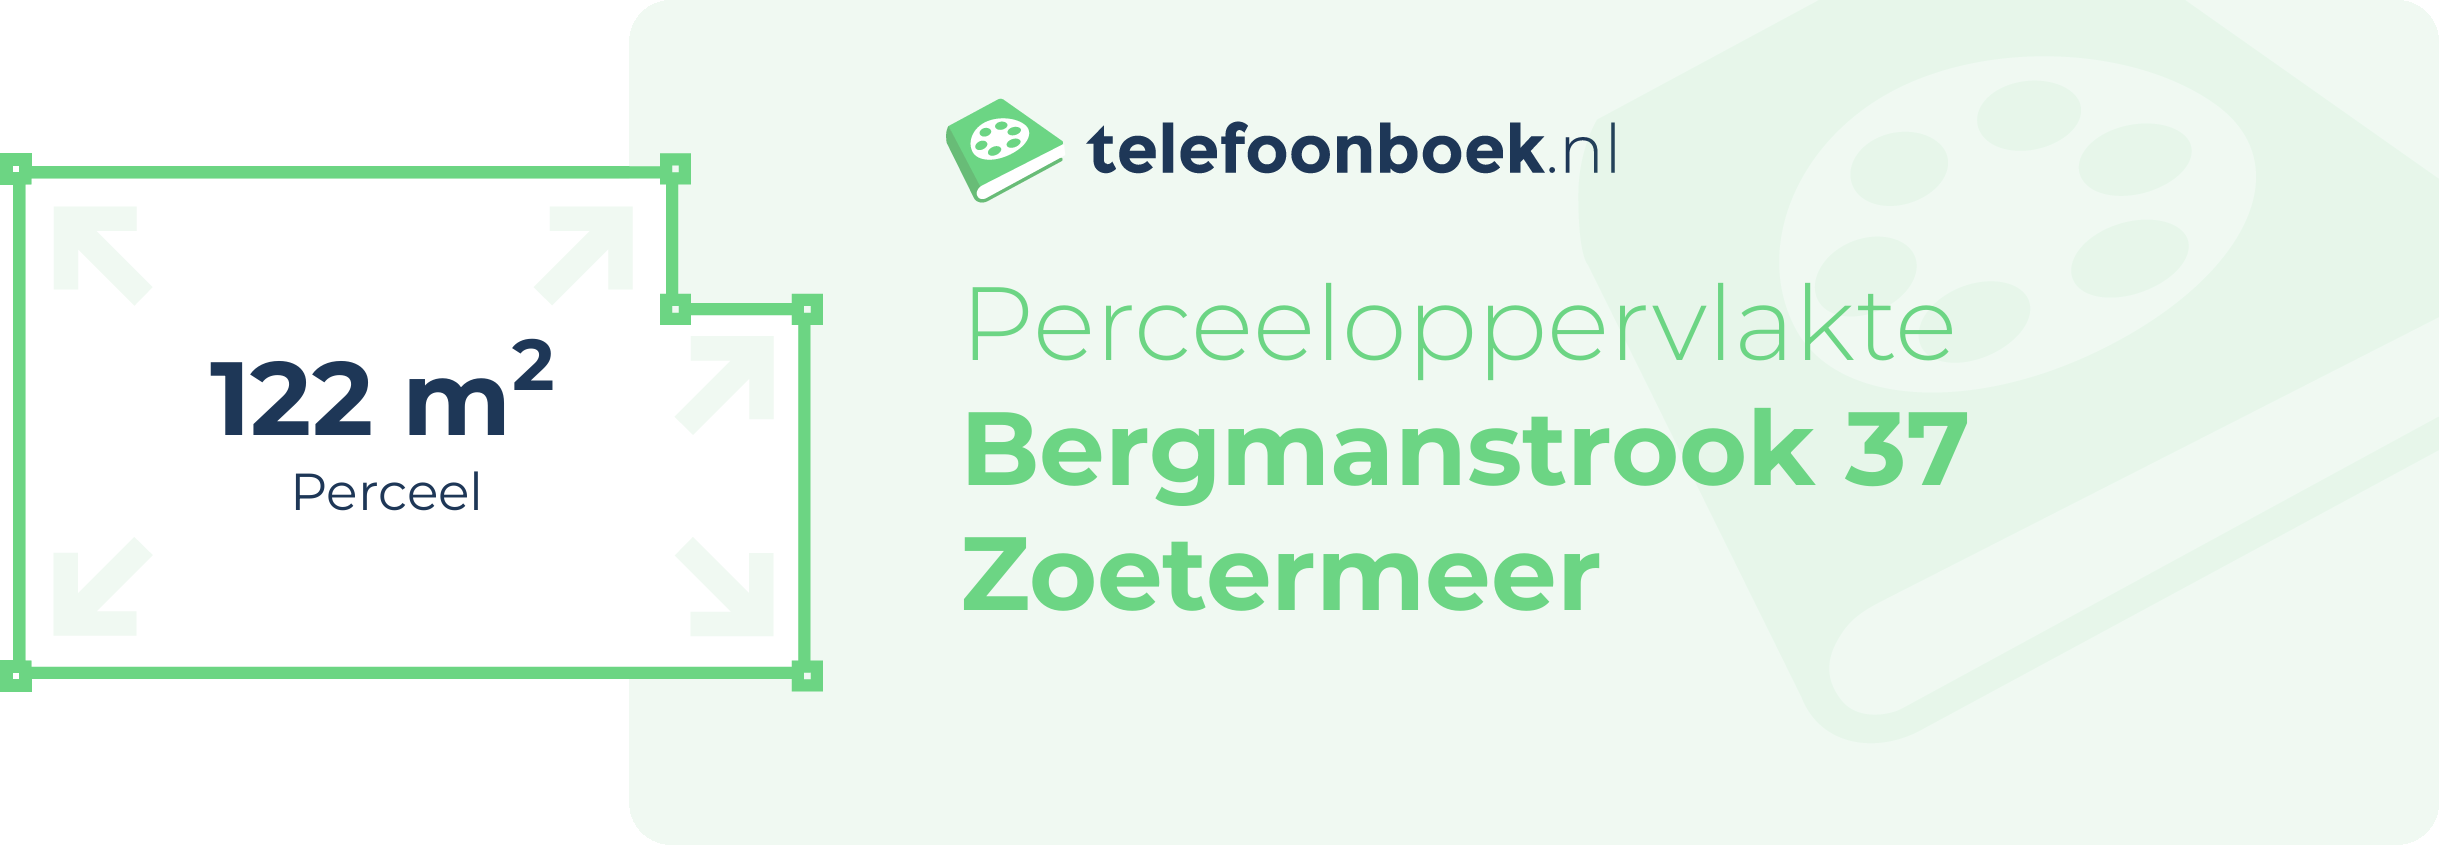 Perceeloppervlakte Bergmanstrook 37 Zoetermeer